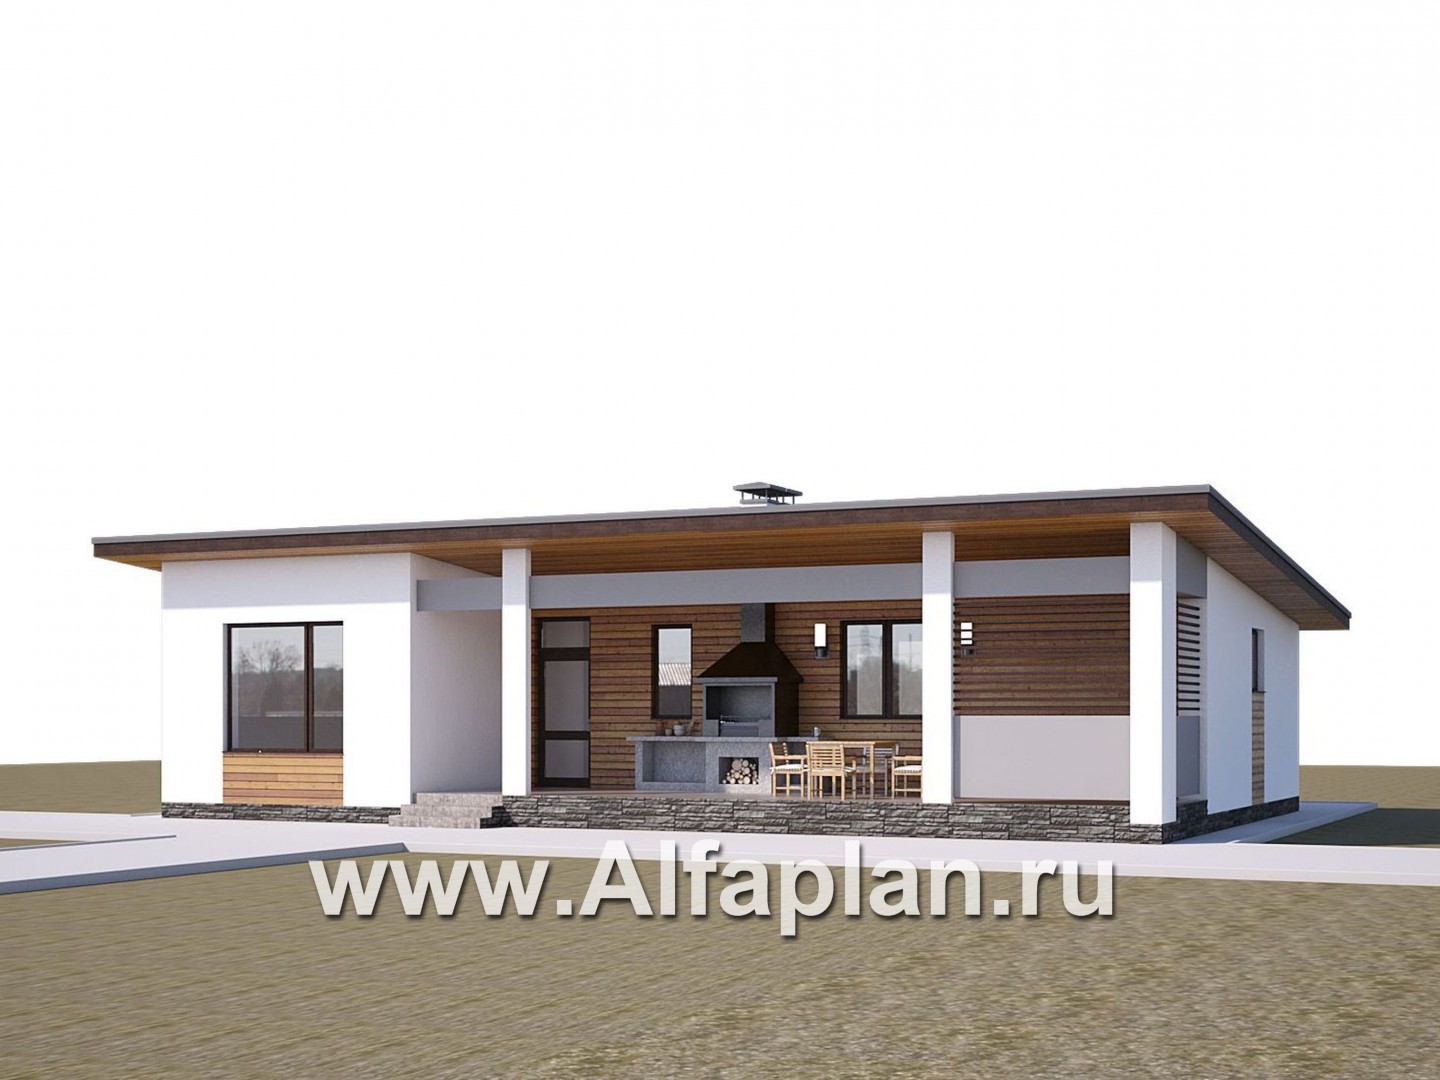 Проекты домов Альфаплан - «Эпсилон» - проект одноэтажного дома с сауной, джакузи и барбекью на террасе, в скандинавском стиле - дополнительное изображение №1